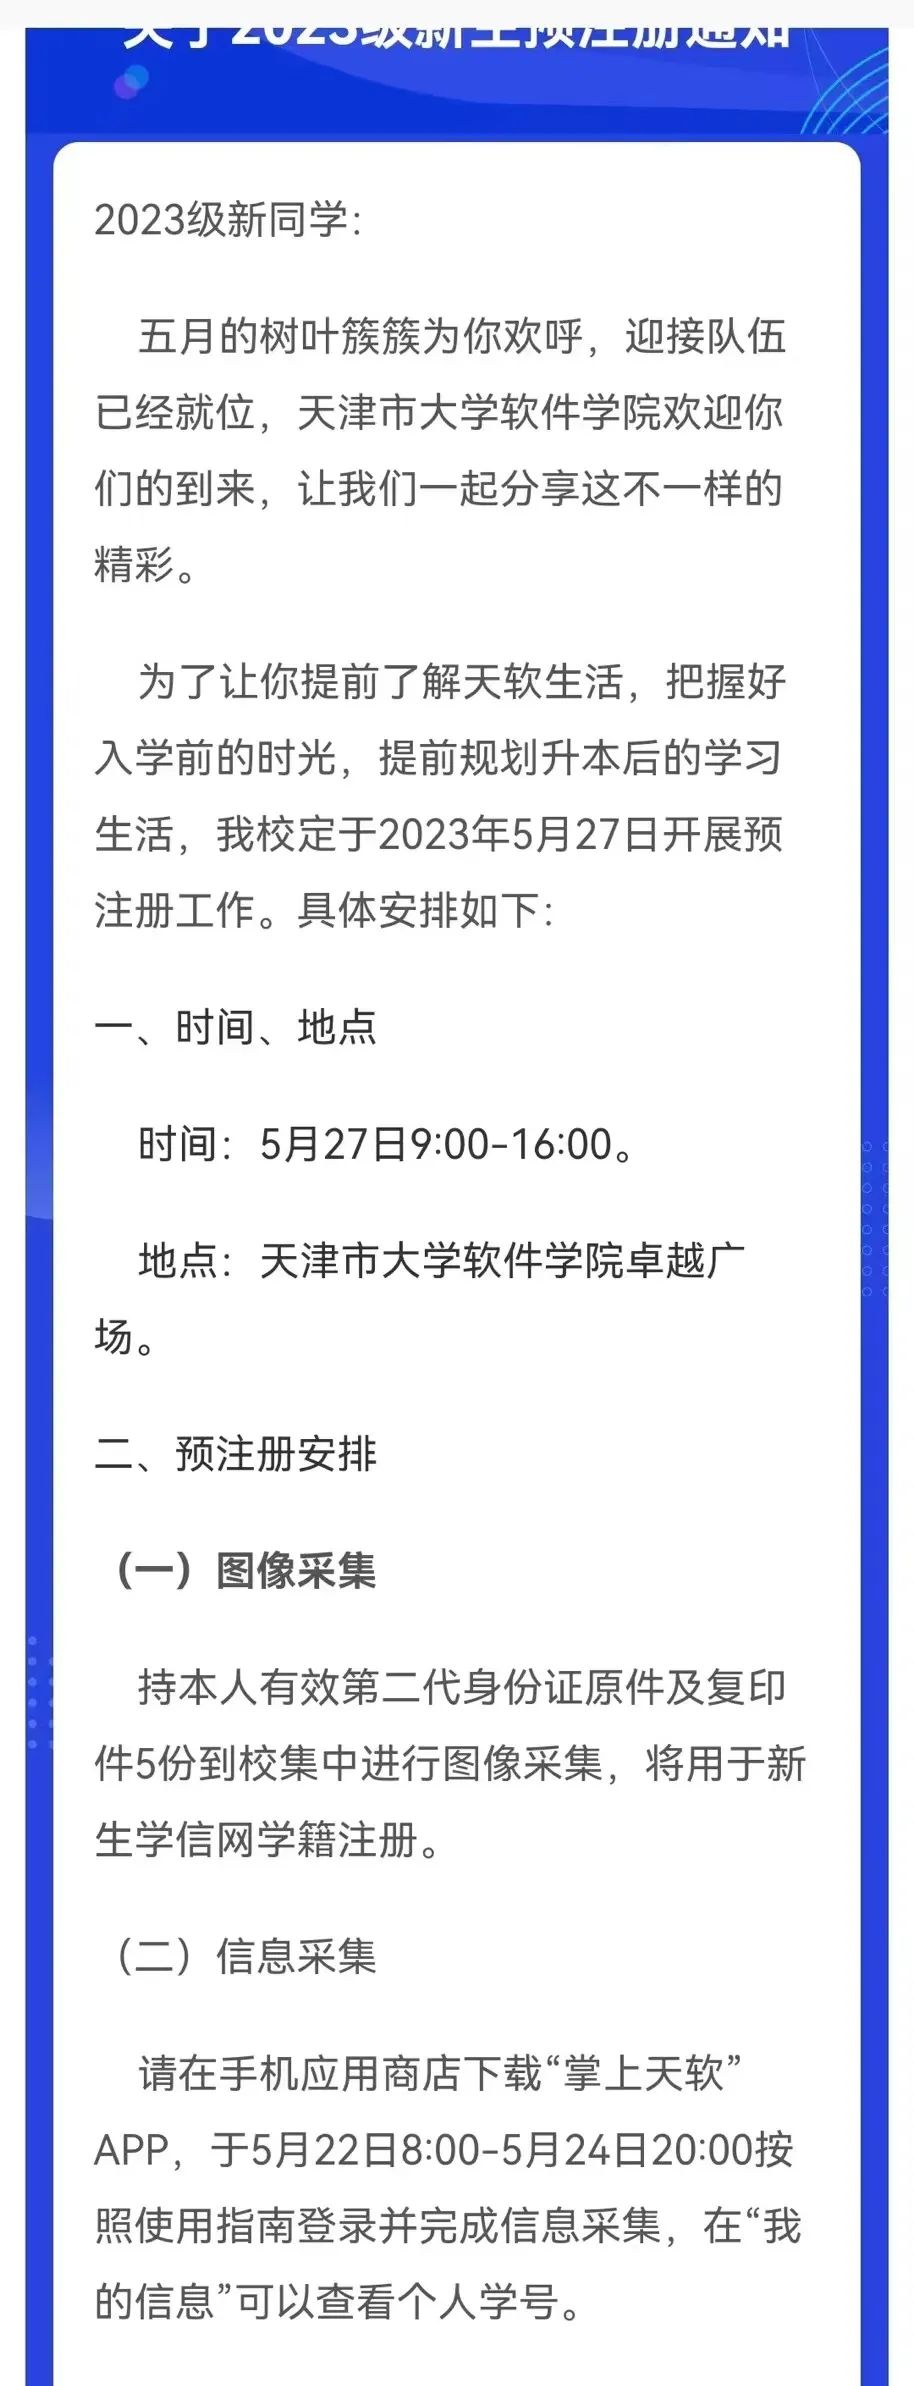 天津市大学软件学院专升本2023级新生预注册通知1.jpg